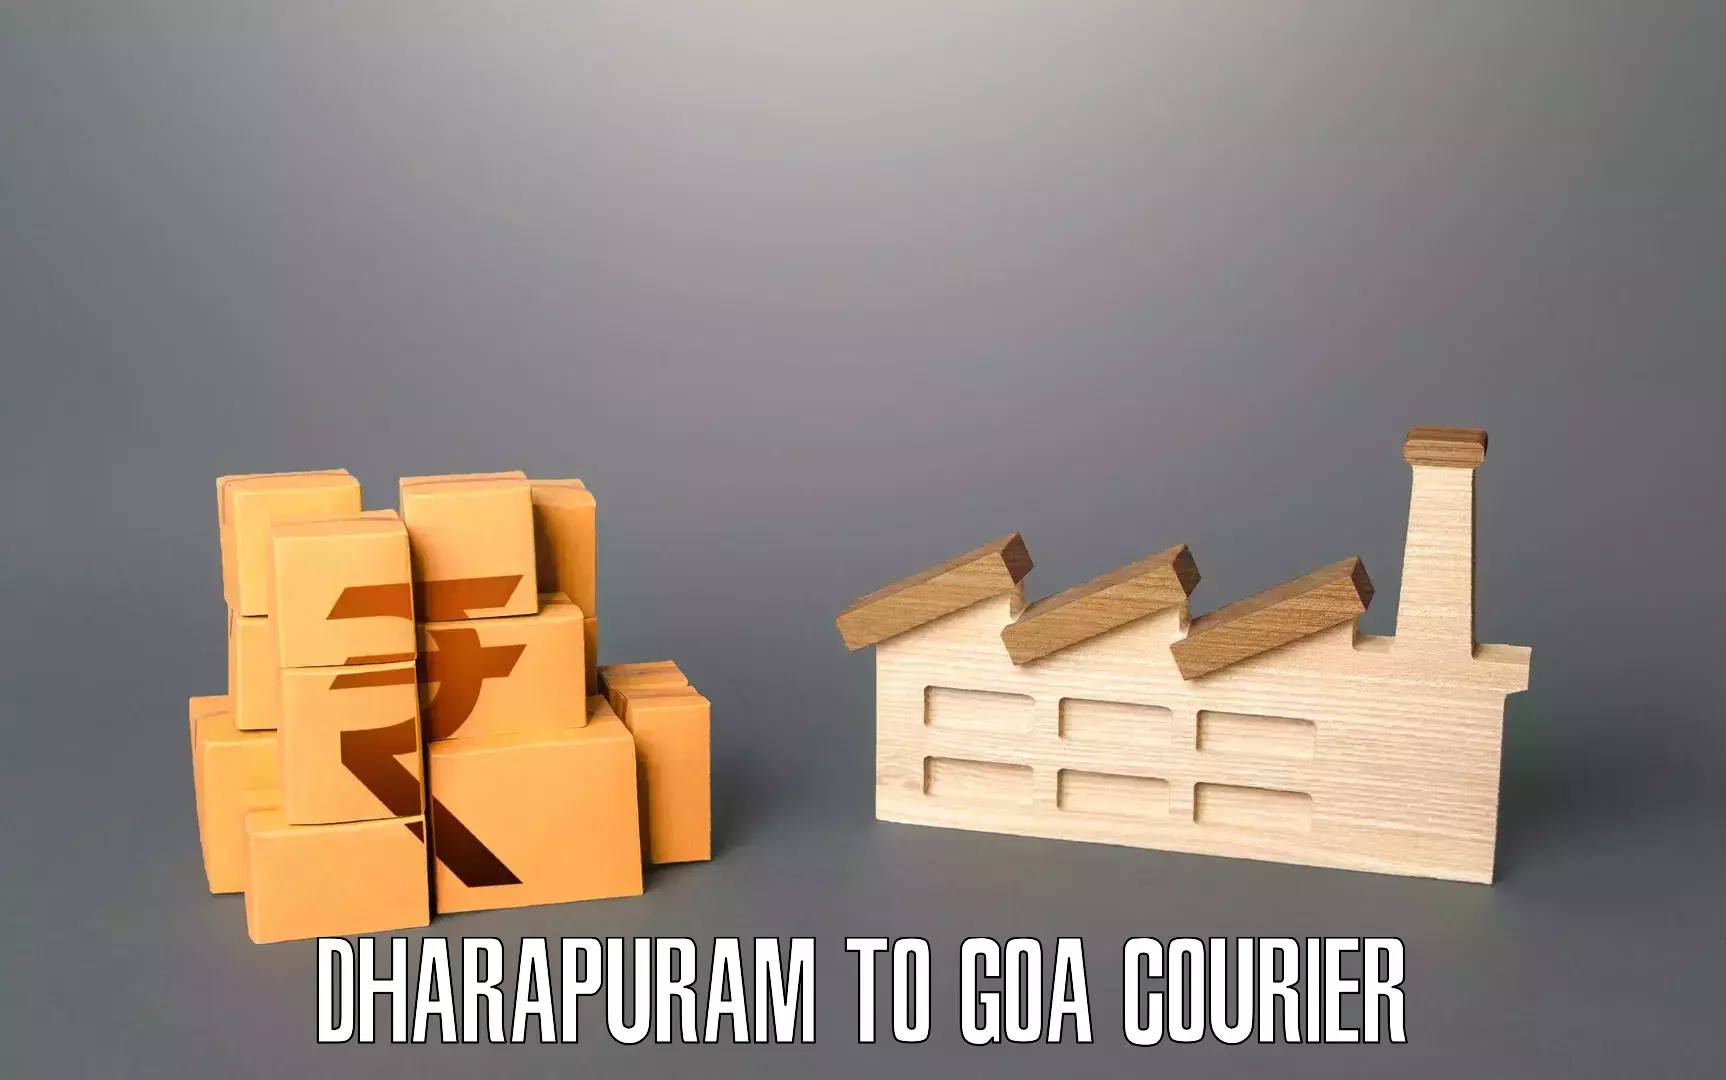 Furniture moving experts Dharapuram to Bicholim